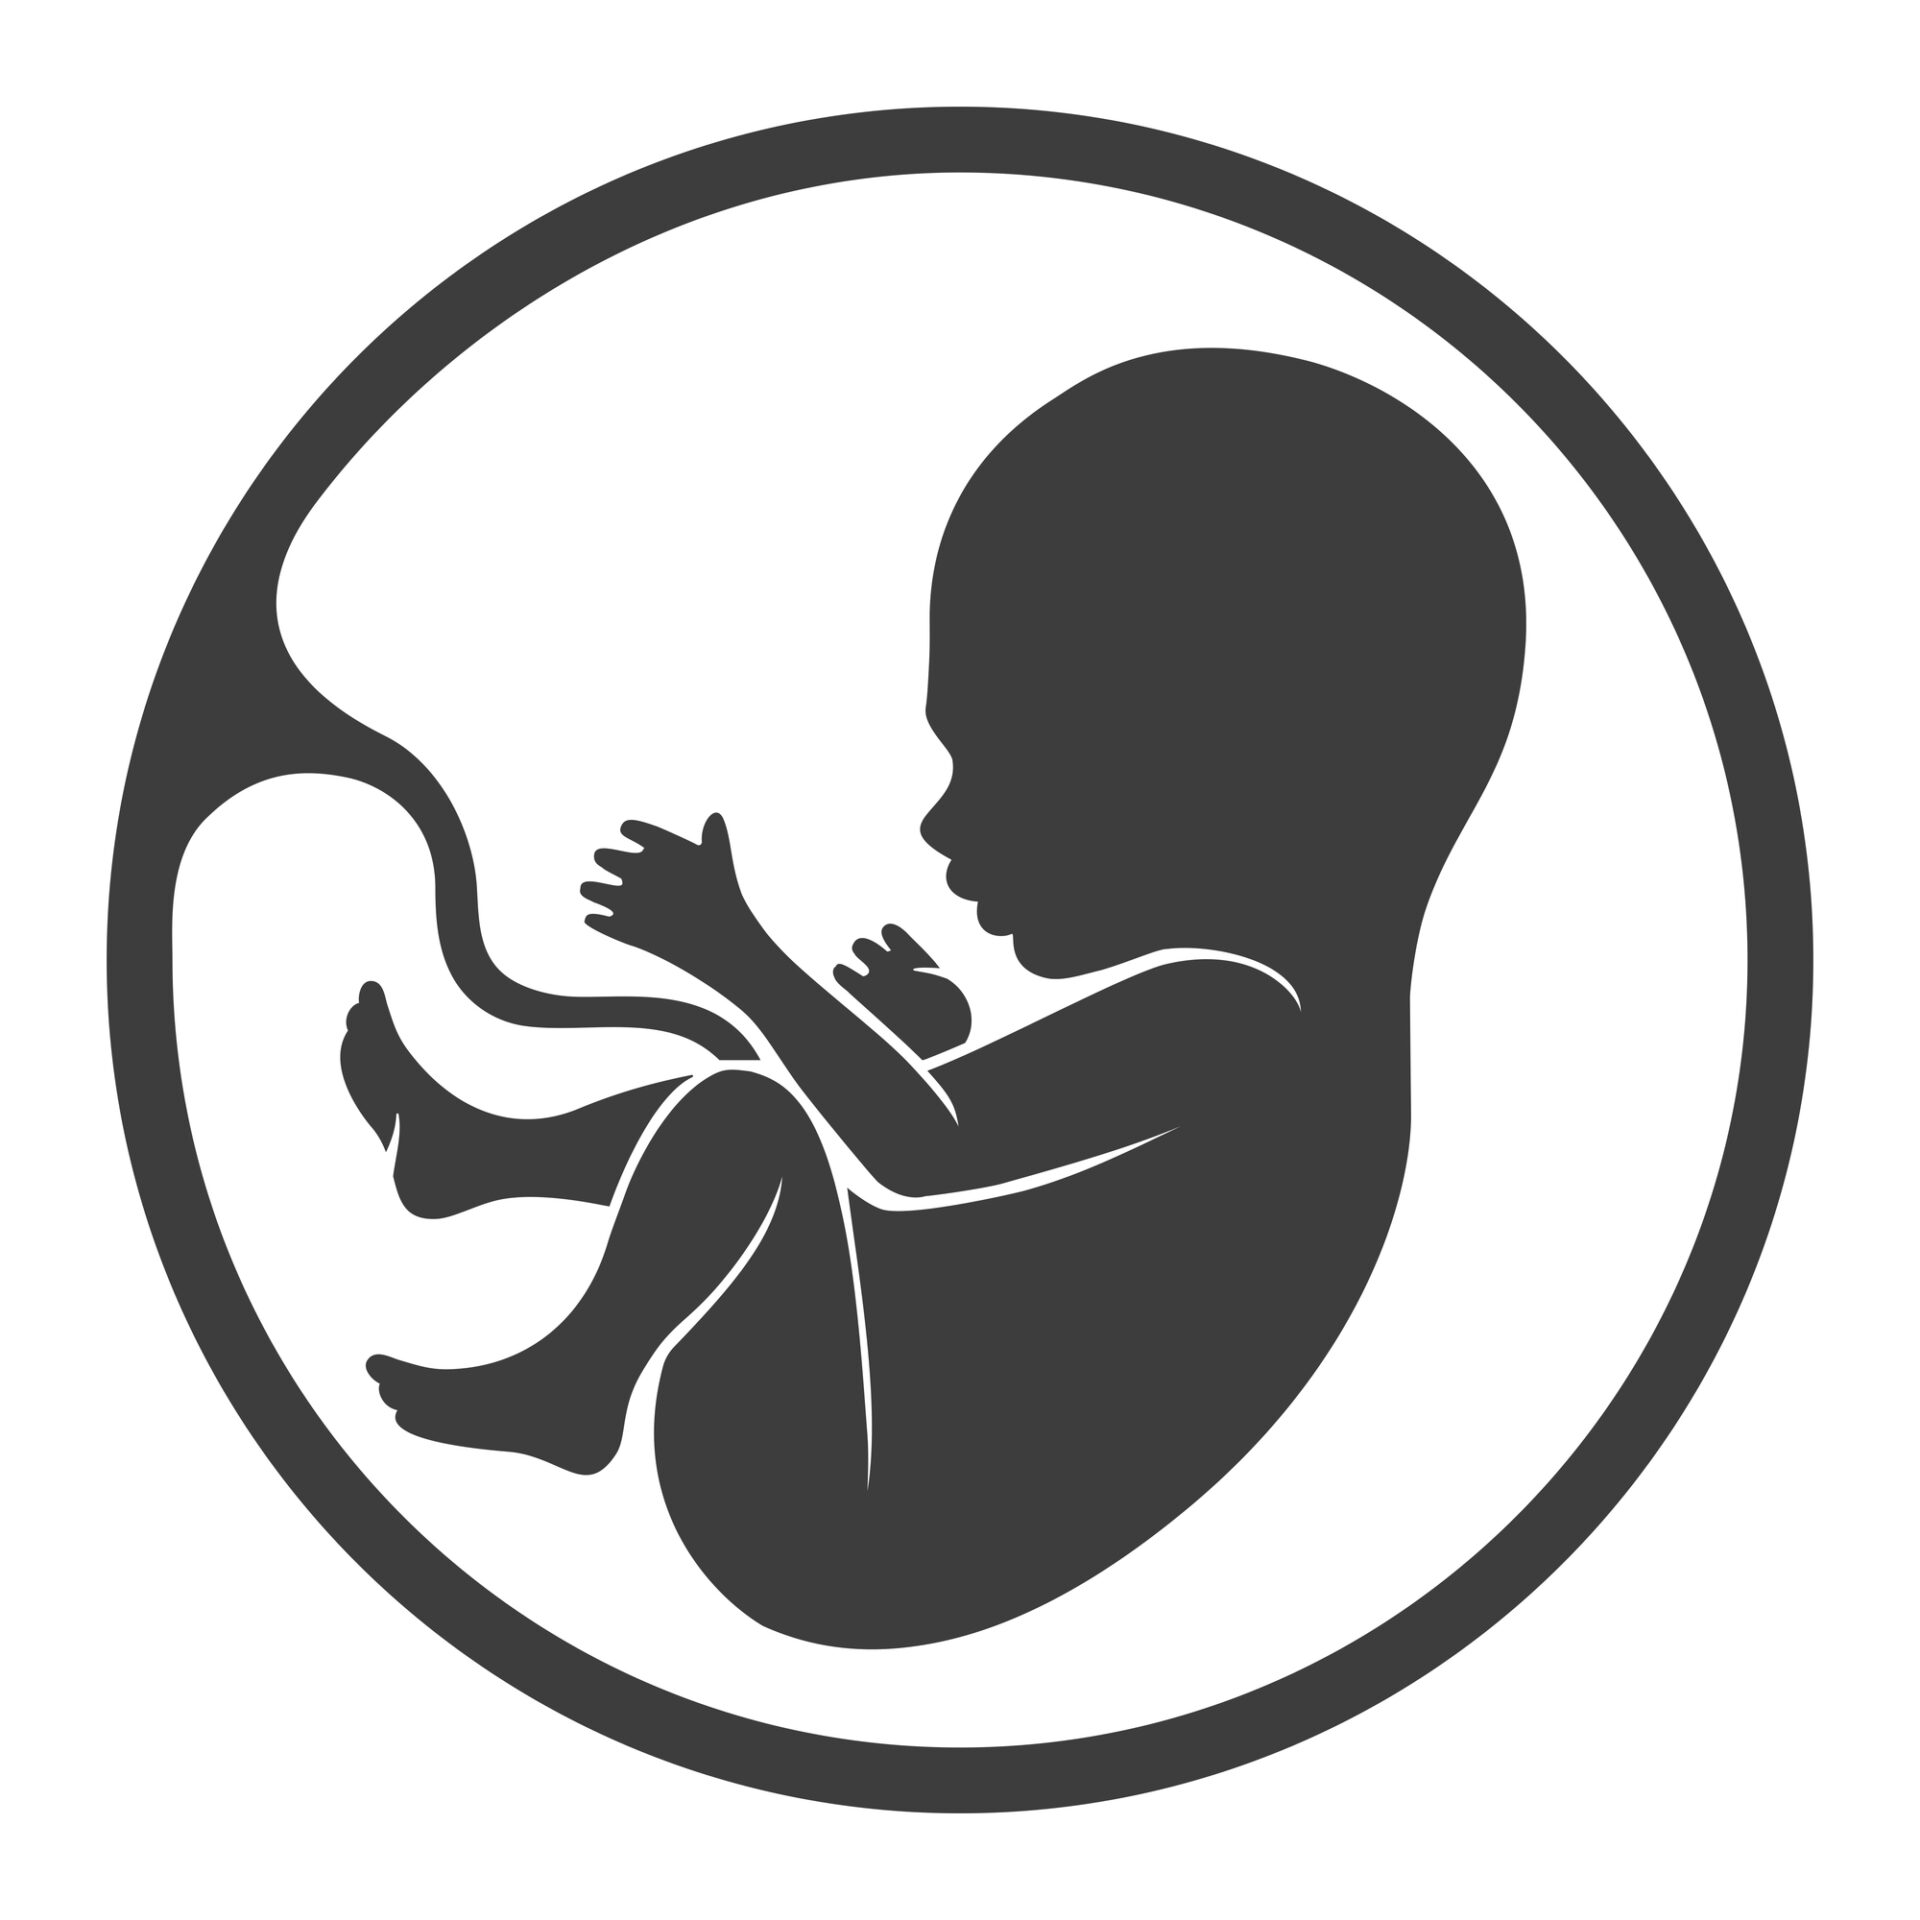 プラセンタとは胎盤の事で妊娠期に形成される臓器で、お腹の赤ちゃんの生命を維持するための大切な役割もあります。